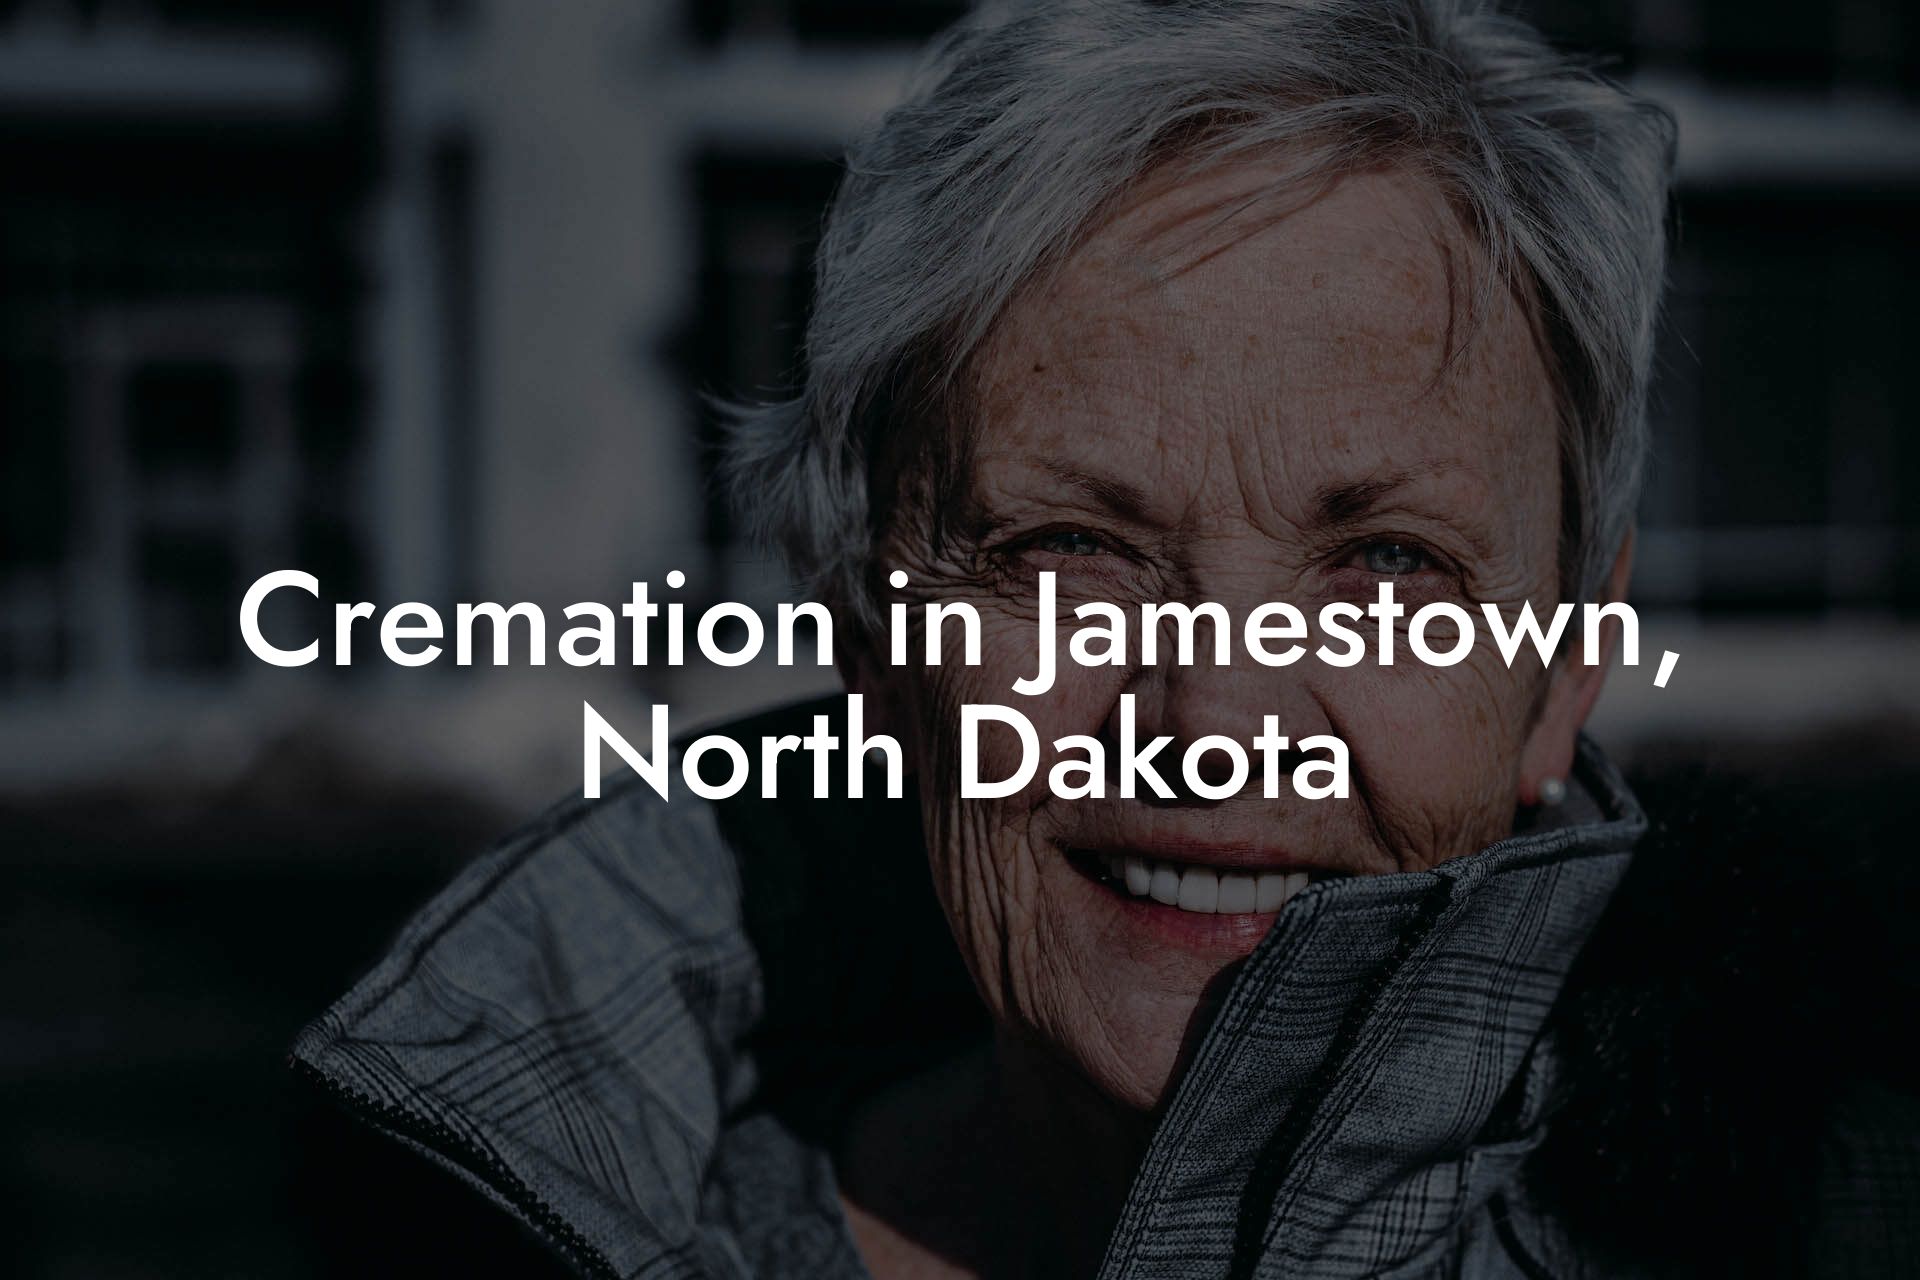 Cremation in Jamestown, North Dakota